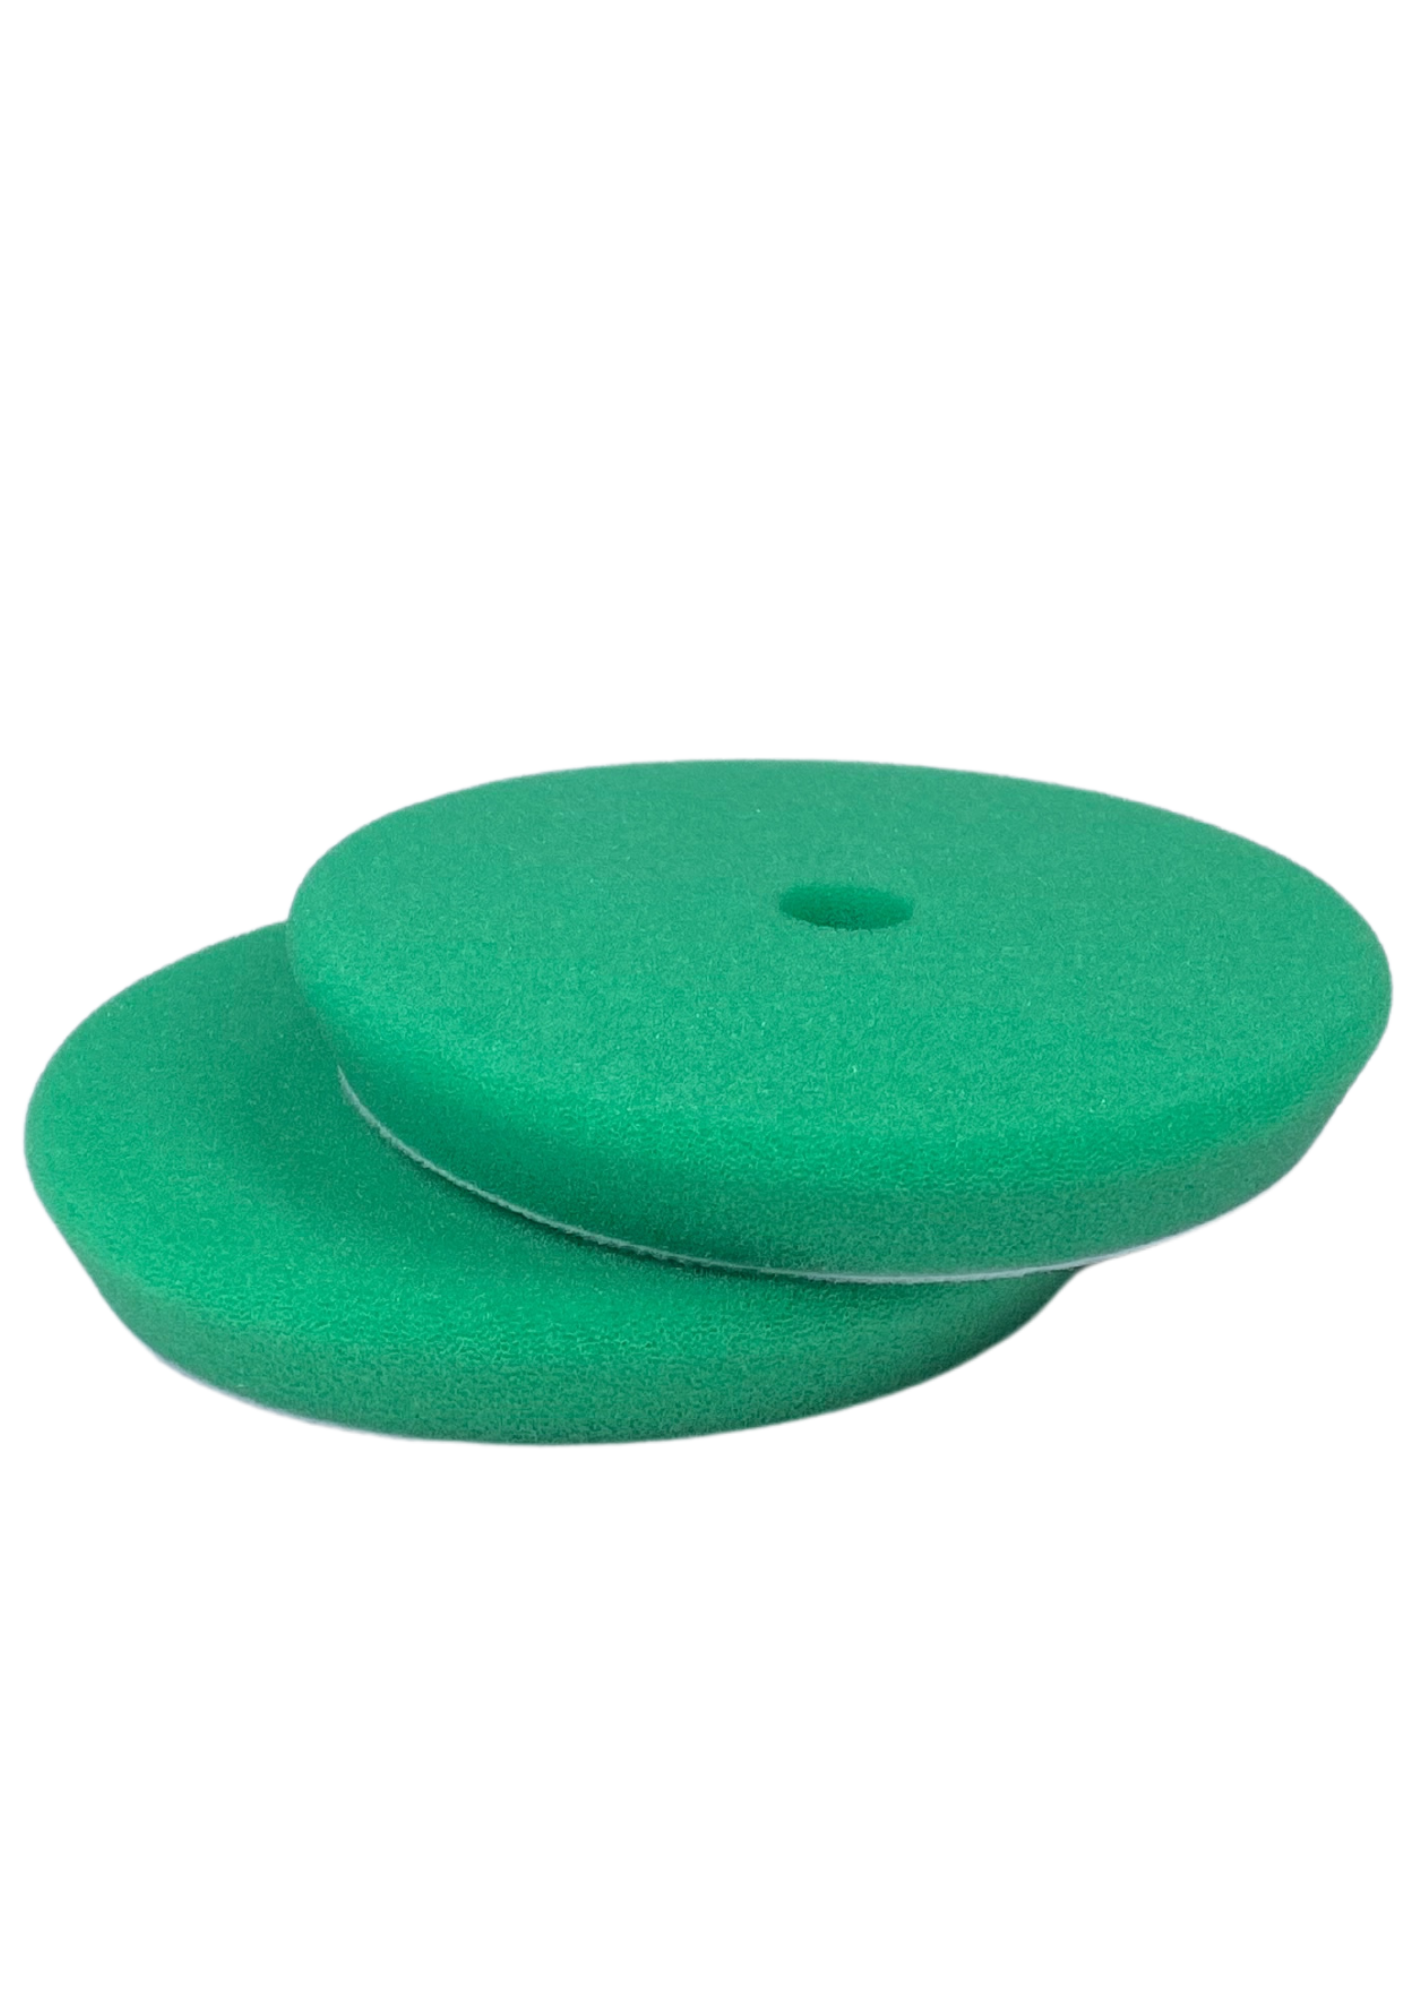 INNOKEM Foam Pad Green Hard Laikka 175x25 mm